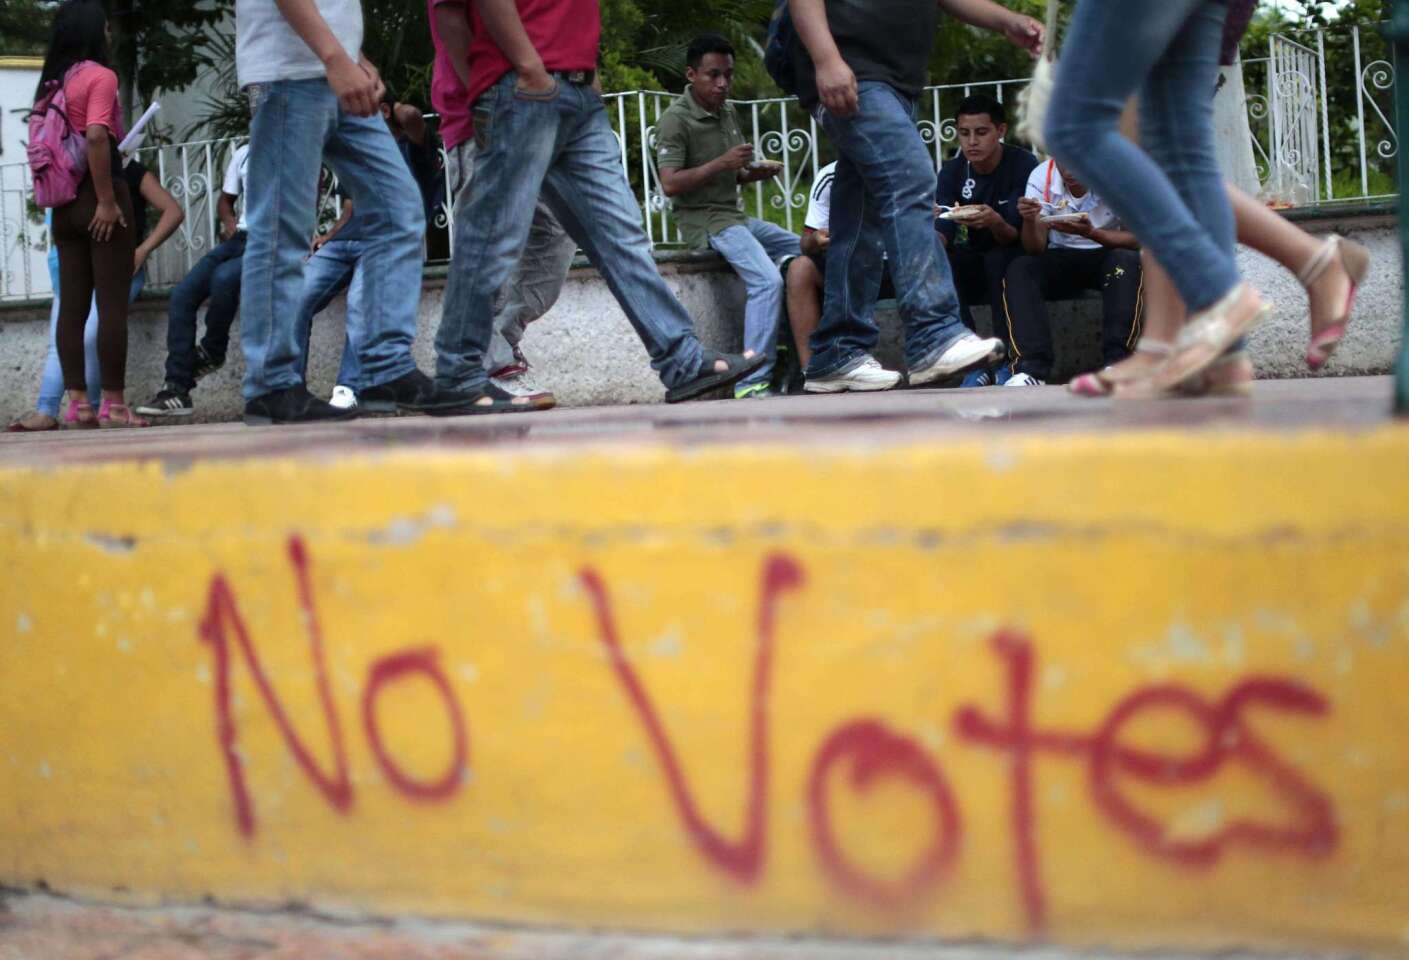 Ambiente electoral en México